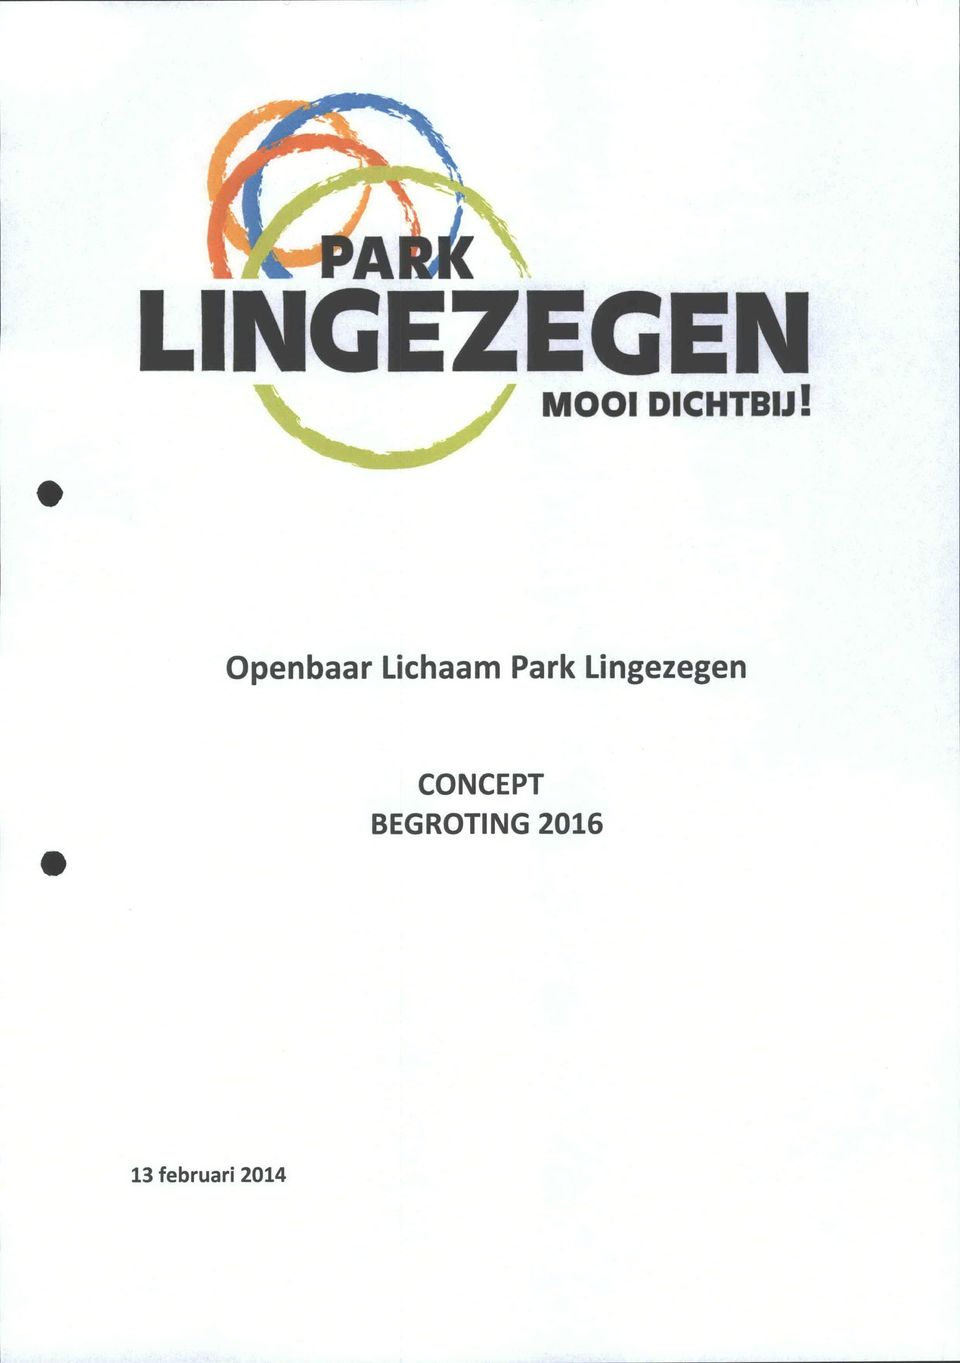 penbaar Lihaam Park